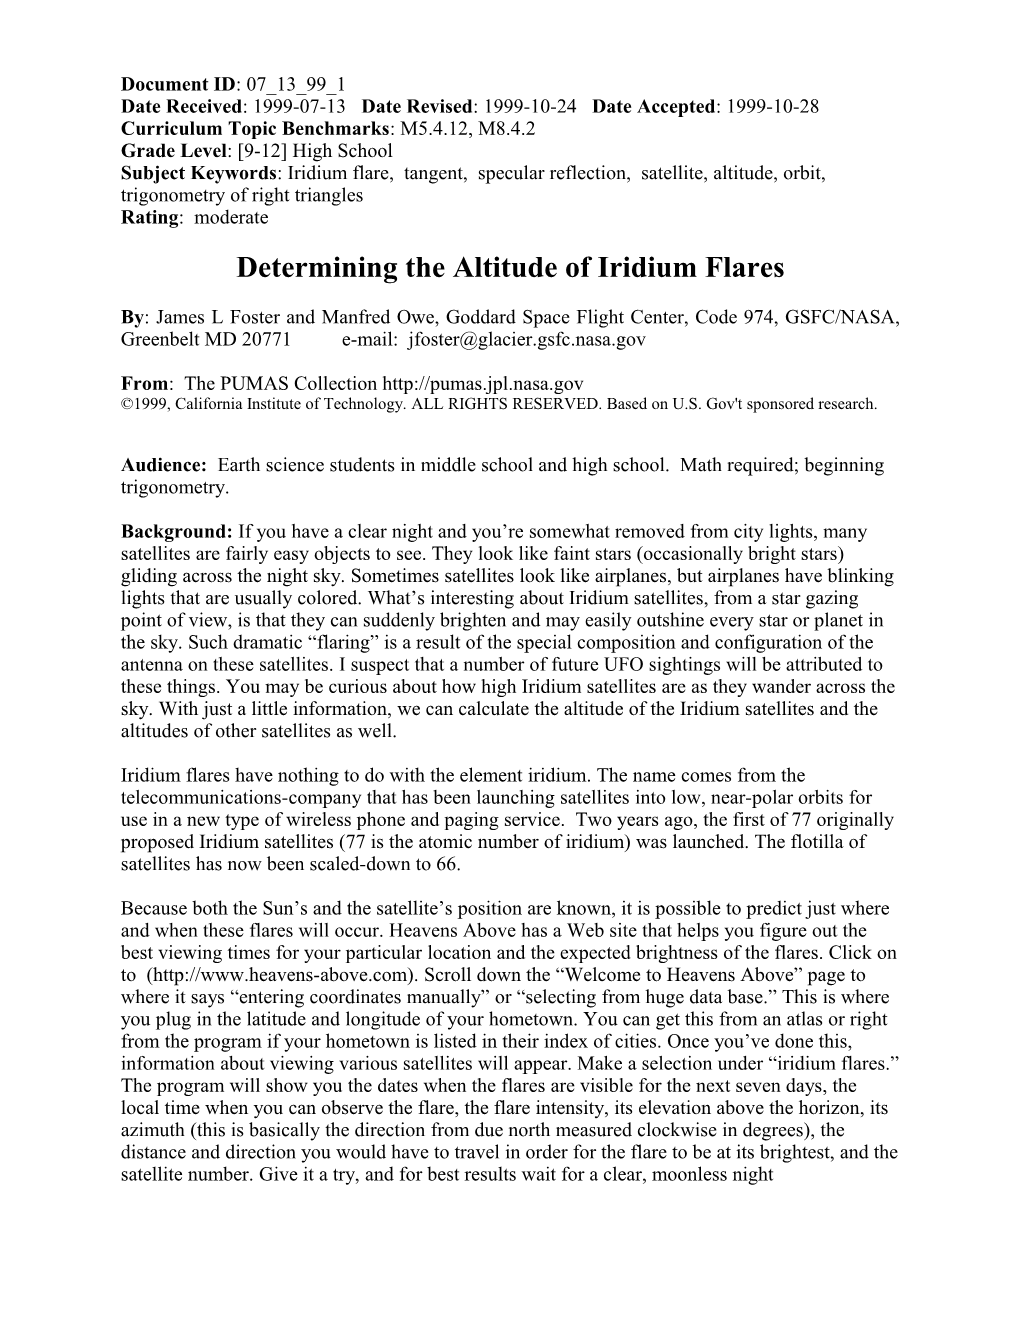 Determining the Altitude of Iridium Flares